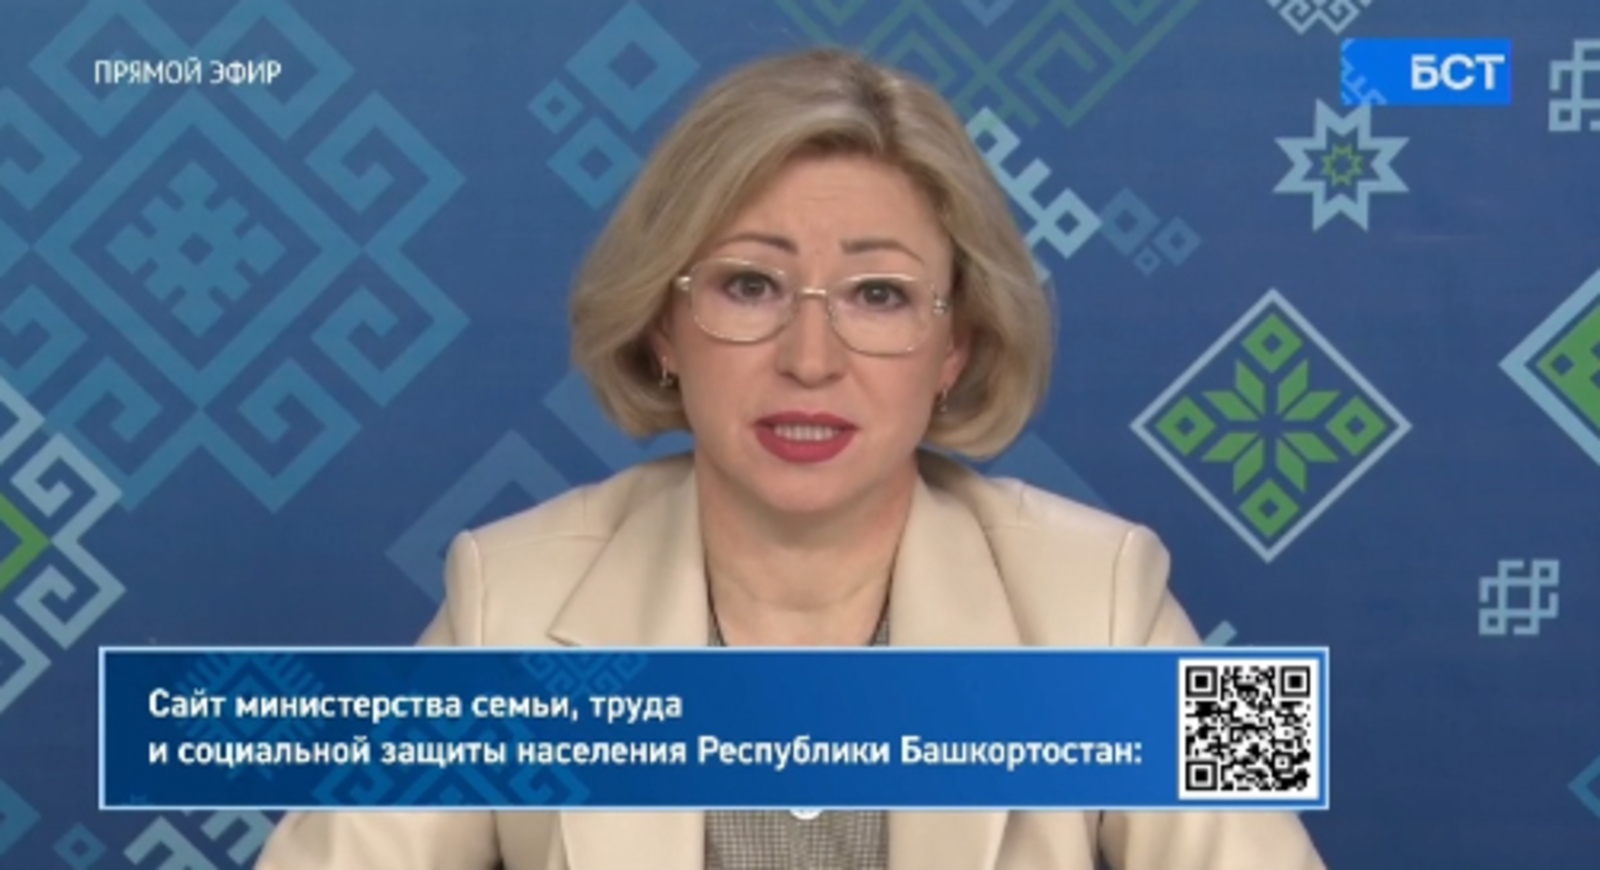 Ленара Иванова: Сегодня острой ситуации на рынке труда не наблюдается